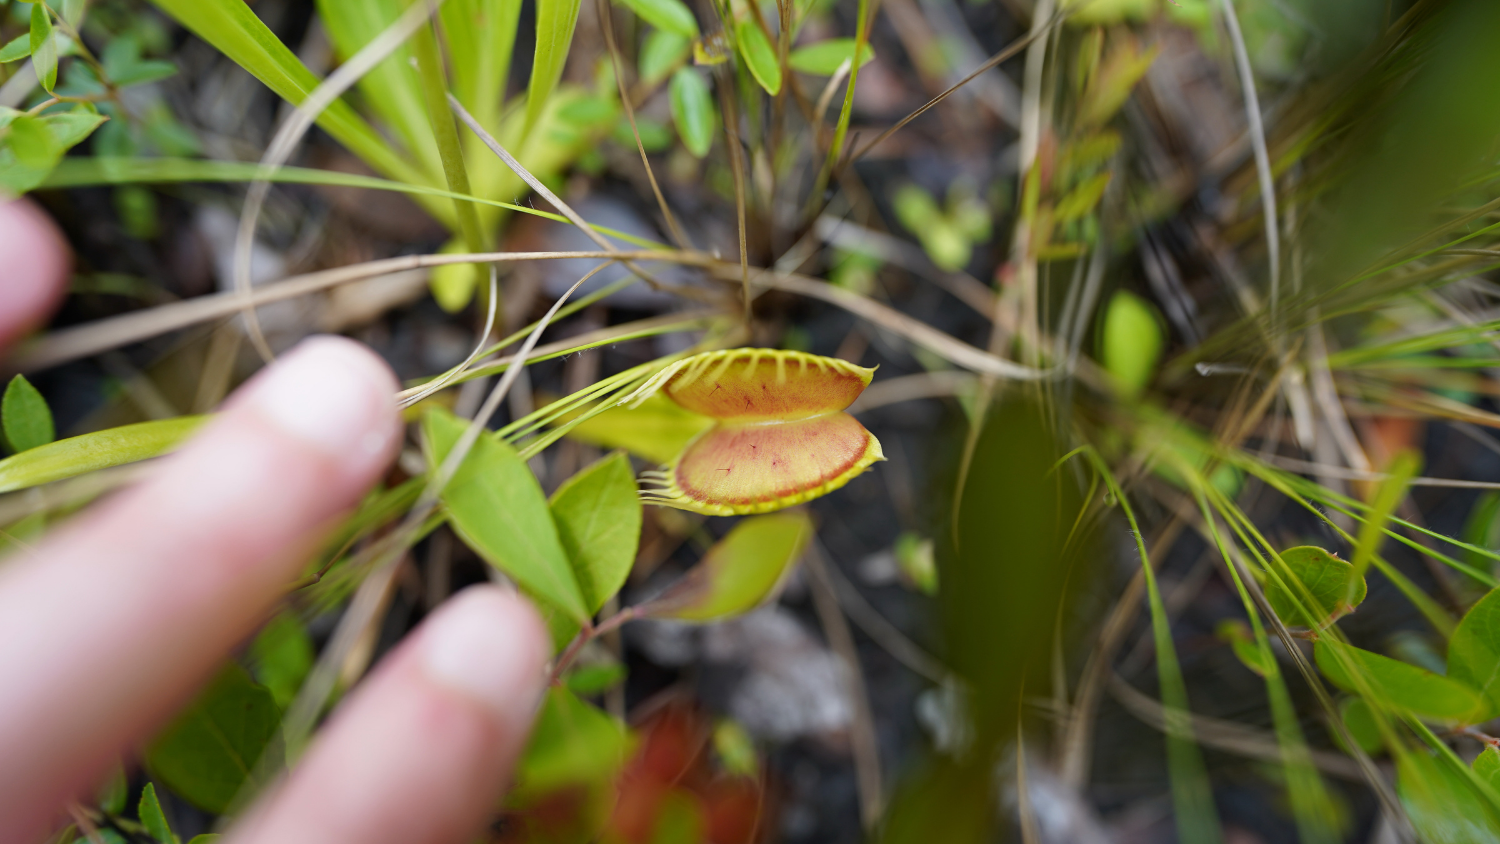 a wild venus flytrap